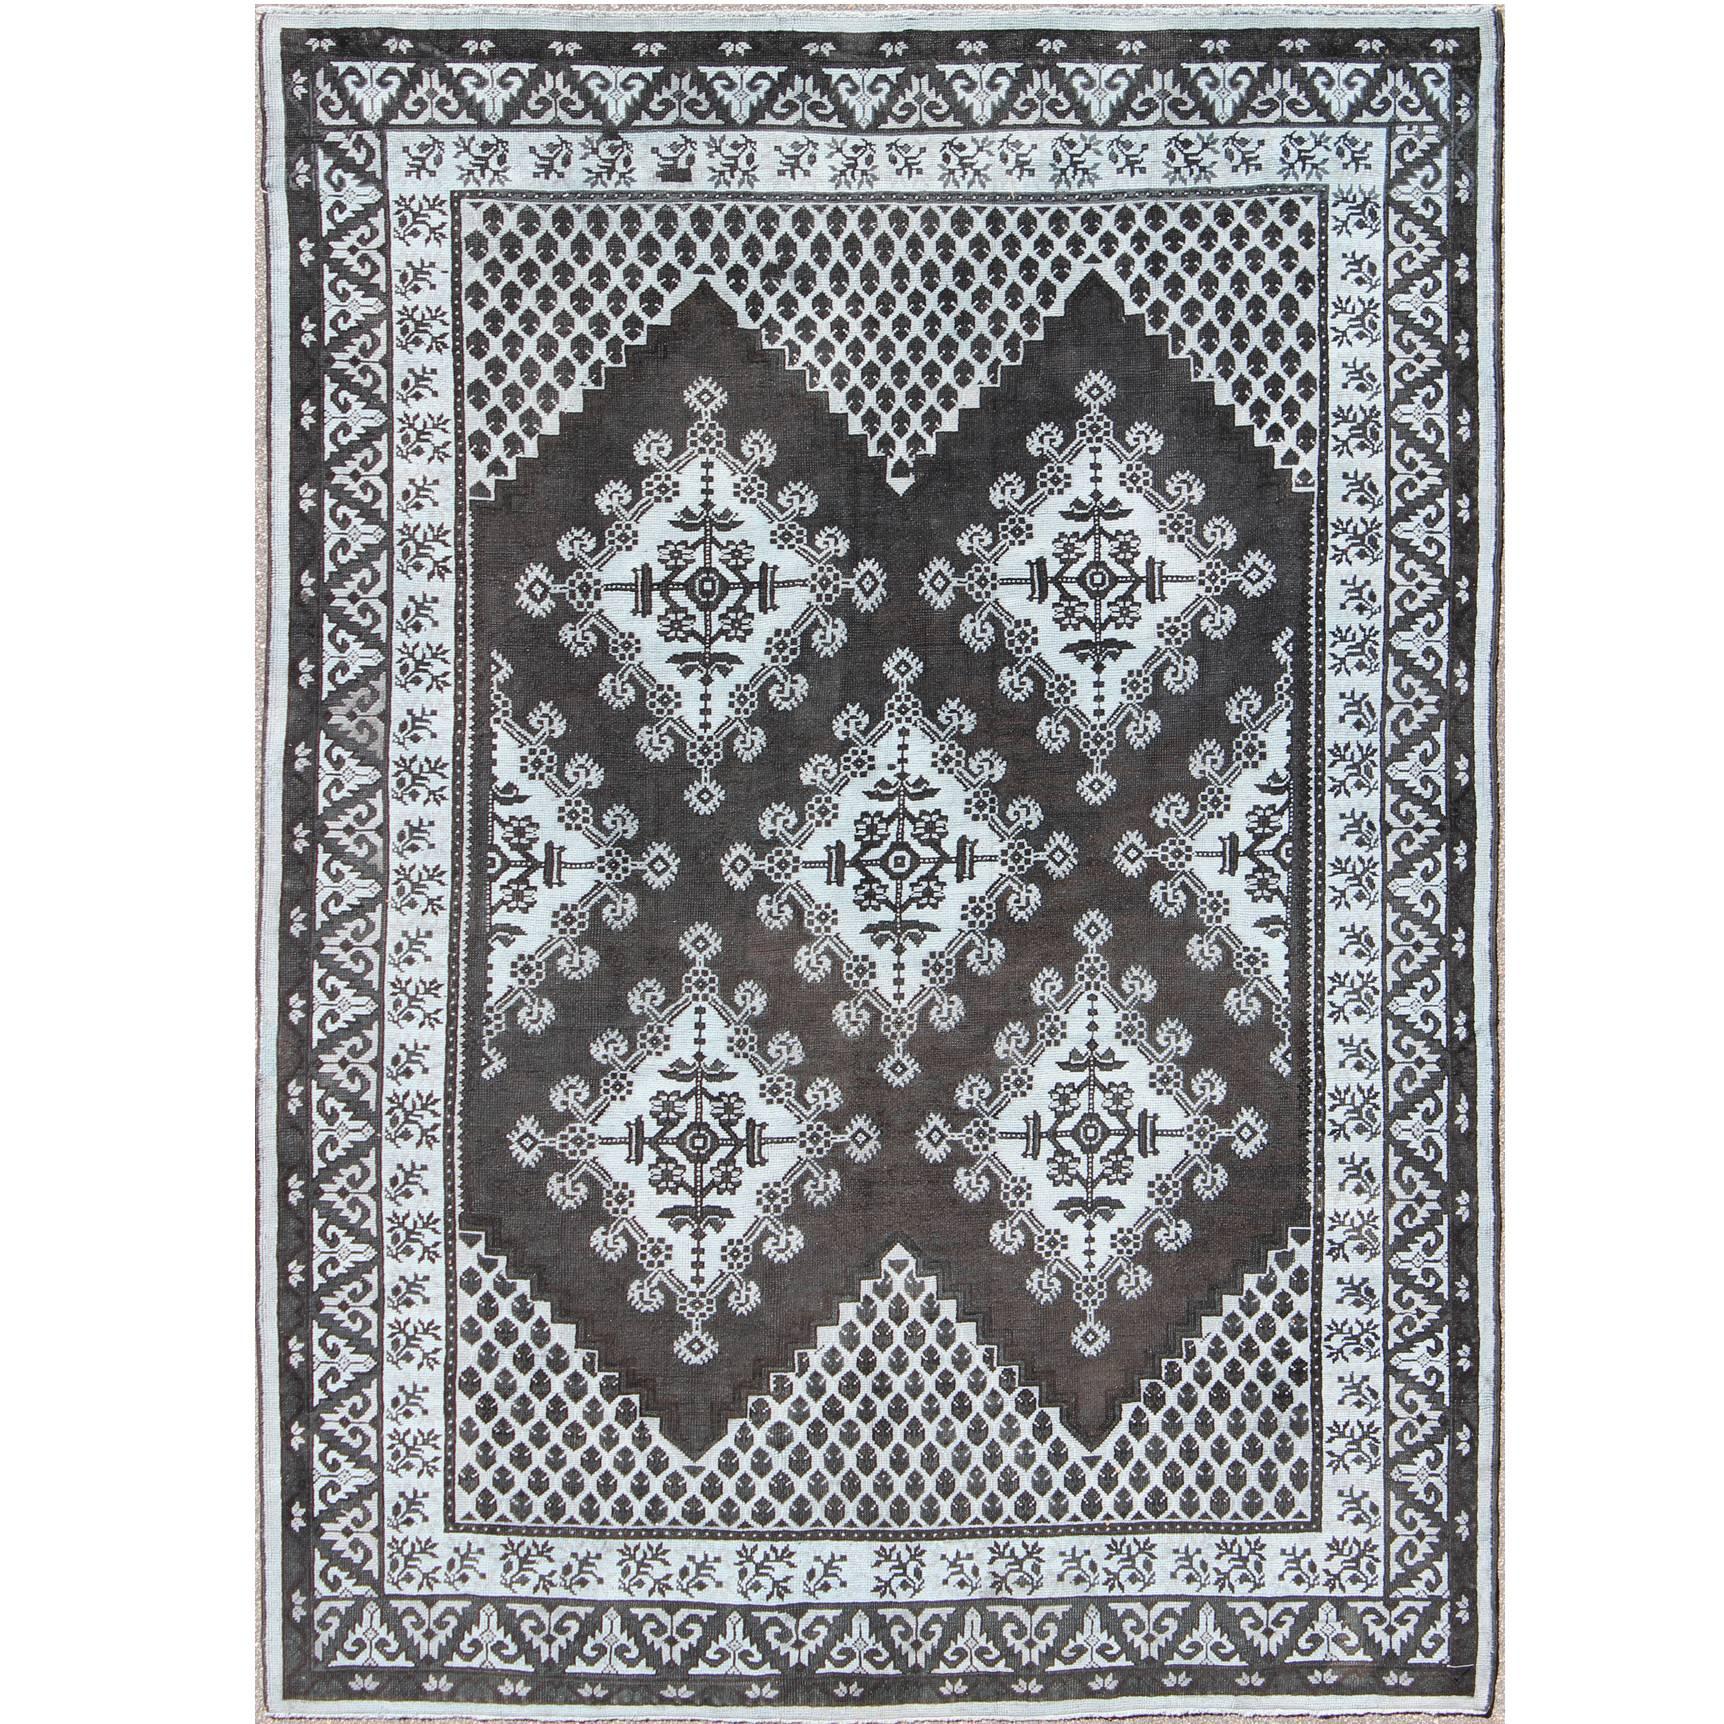 Marokkanischer Vintage-Teppich mit geometrischem Design und Stammesmotiv in Schwarz und Grau